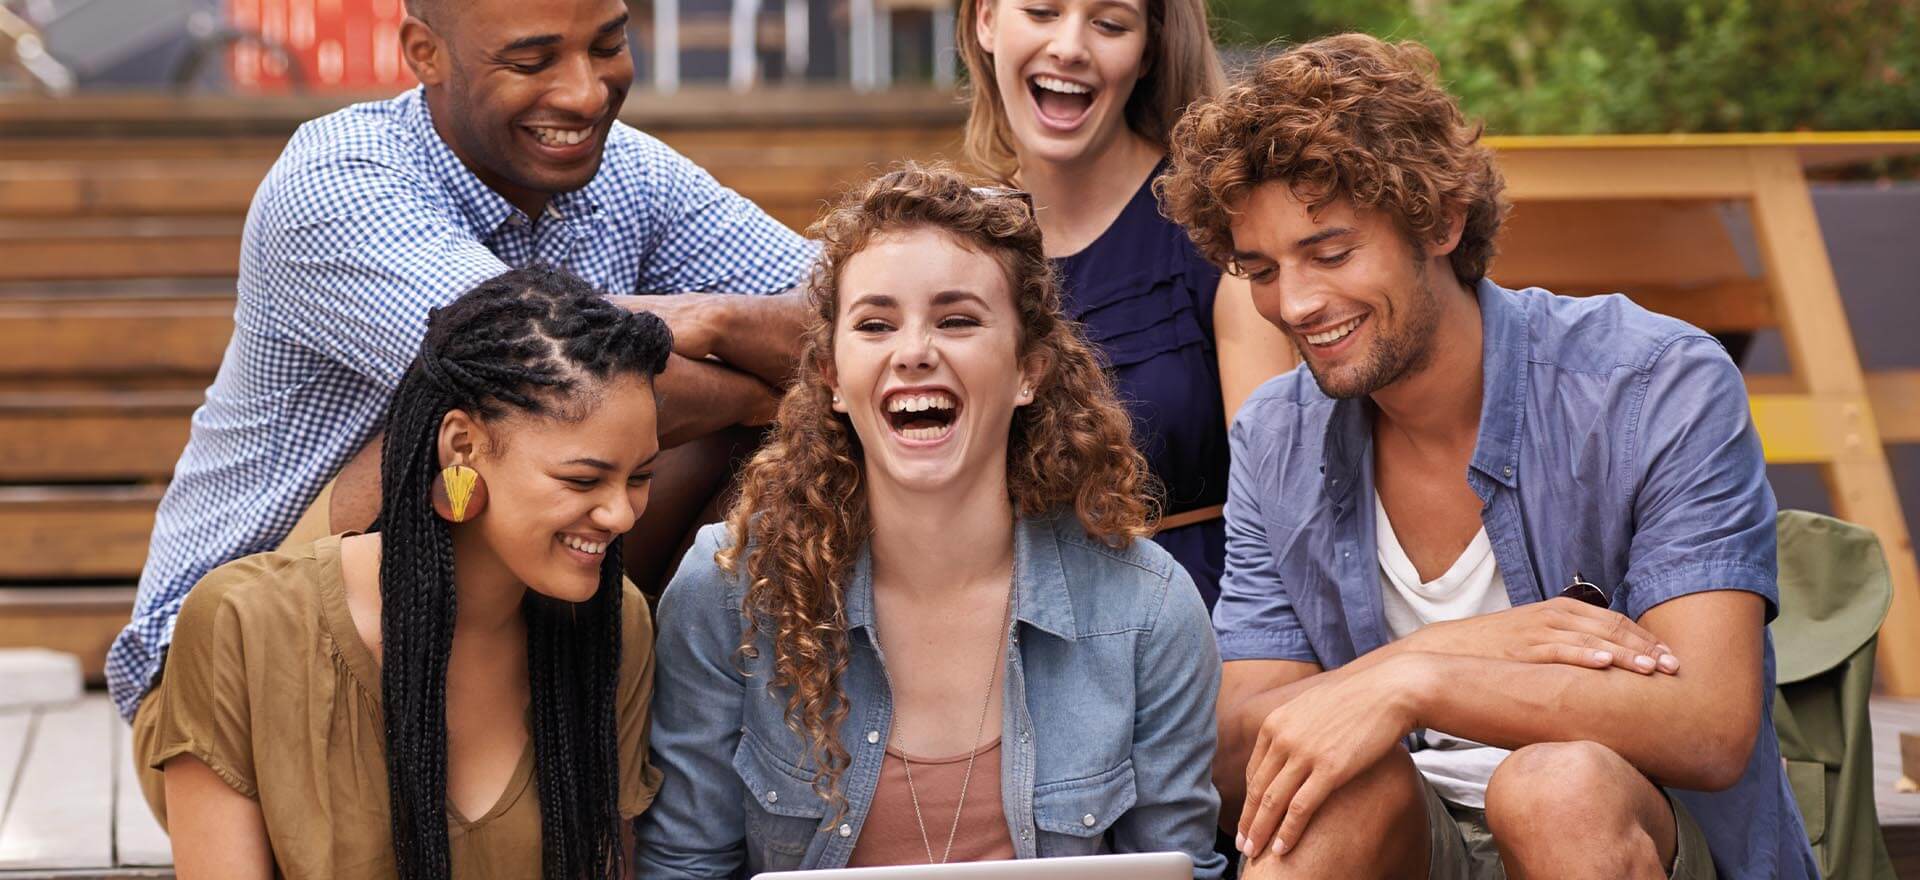 5 junge Leute sitzen lachend beieinander